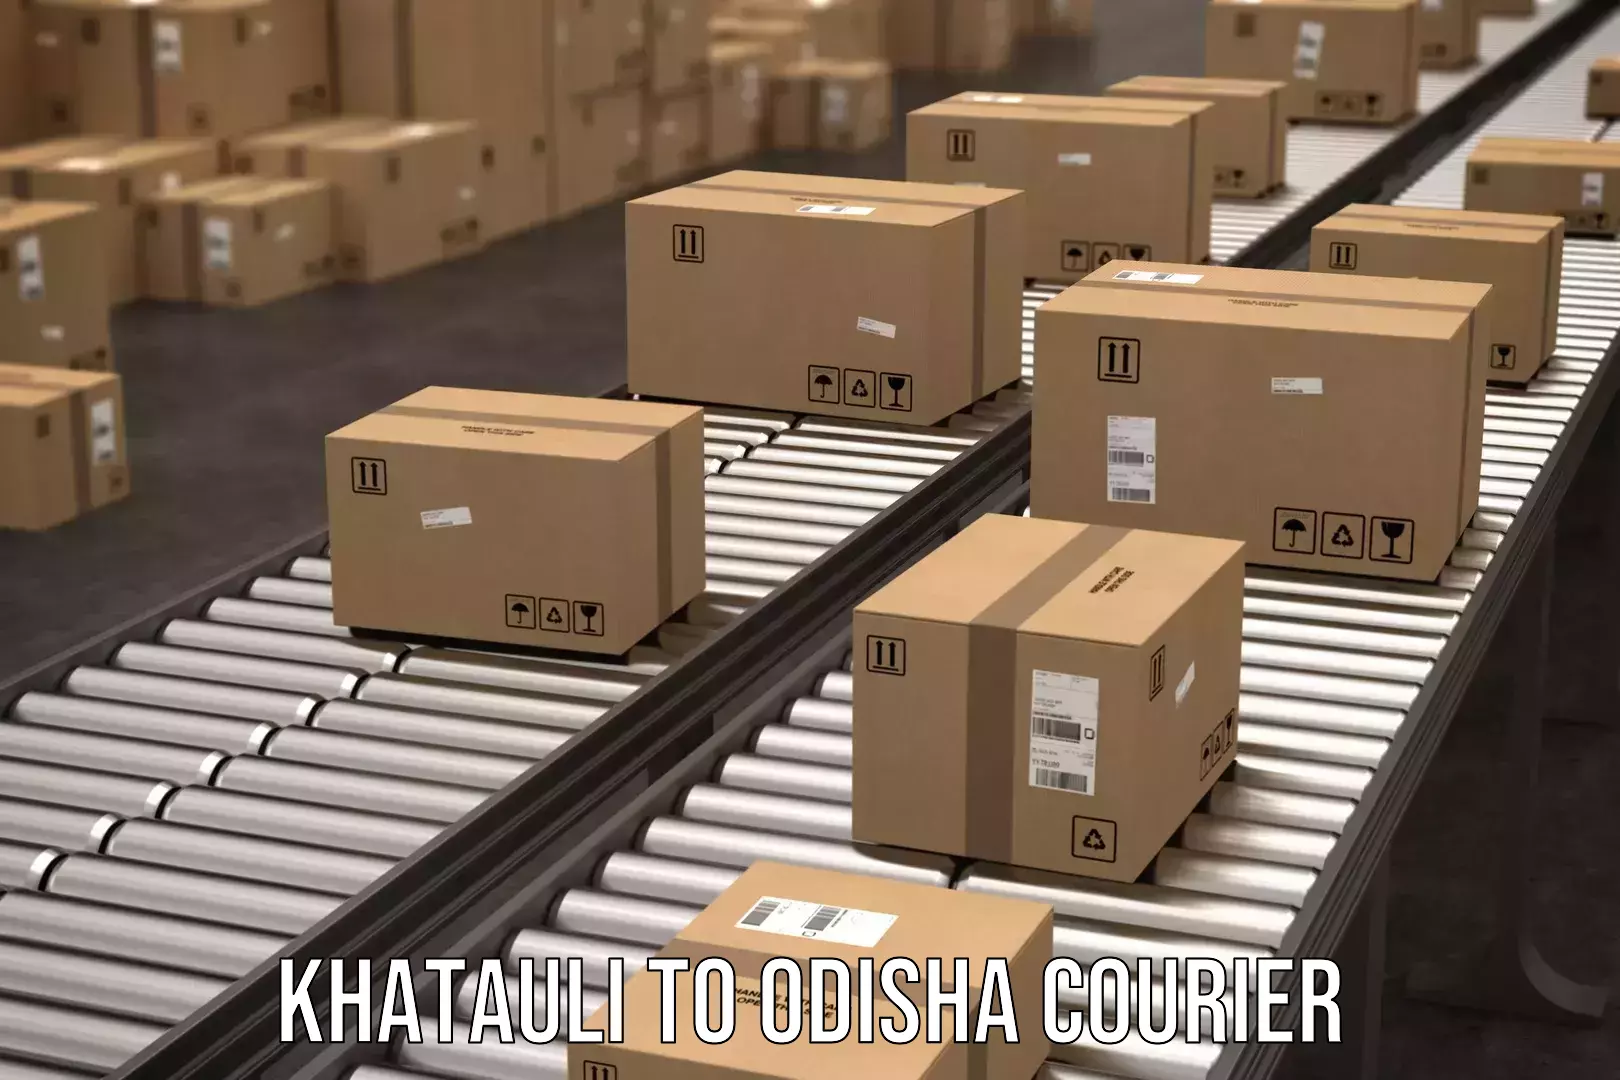 Digital shipping tools Khatauli to Muribahal